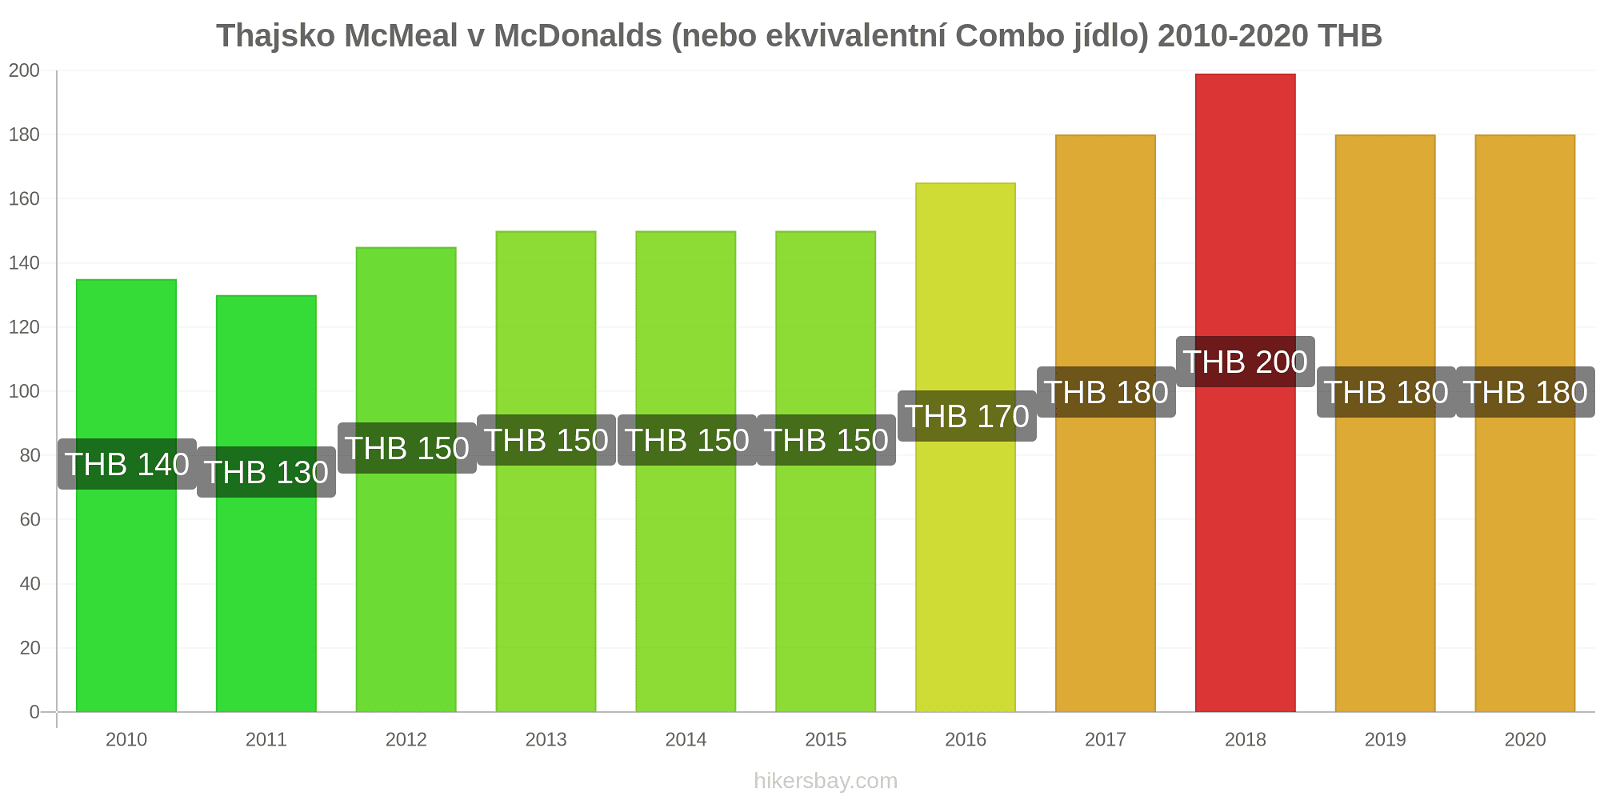 Thajsko změny cen McMeal v McDonalds (nebo ekvivalentní Combo jídlo) hikersbay.com